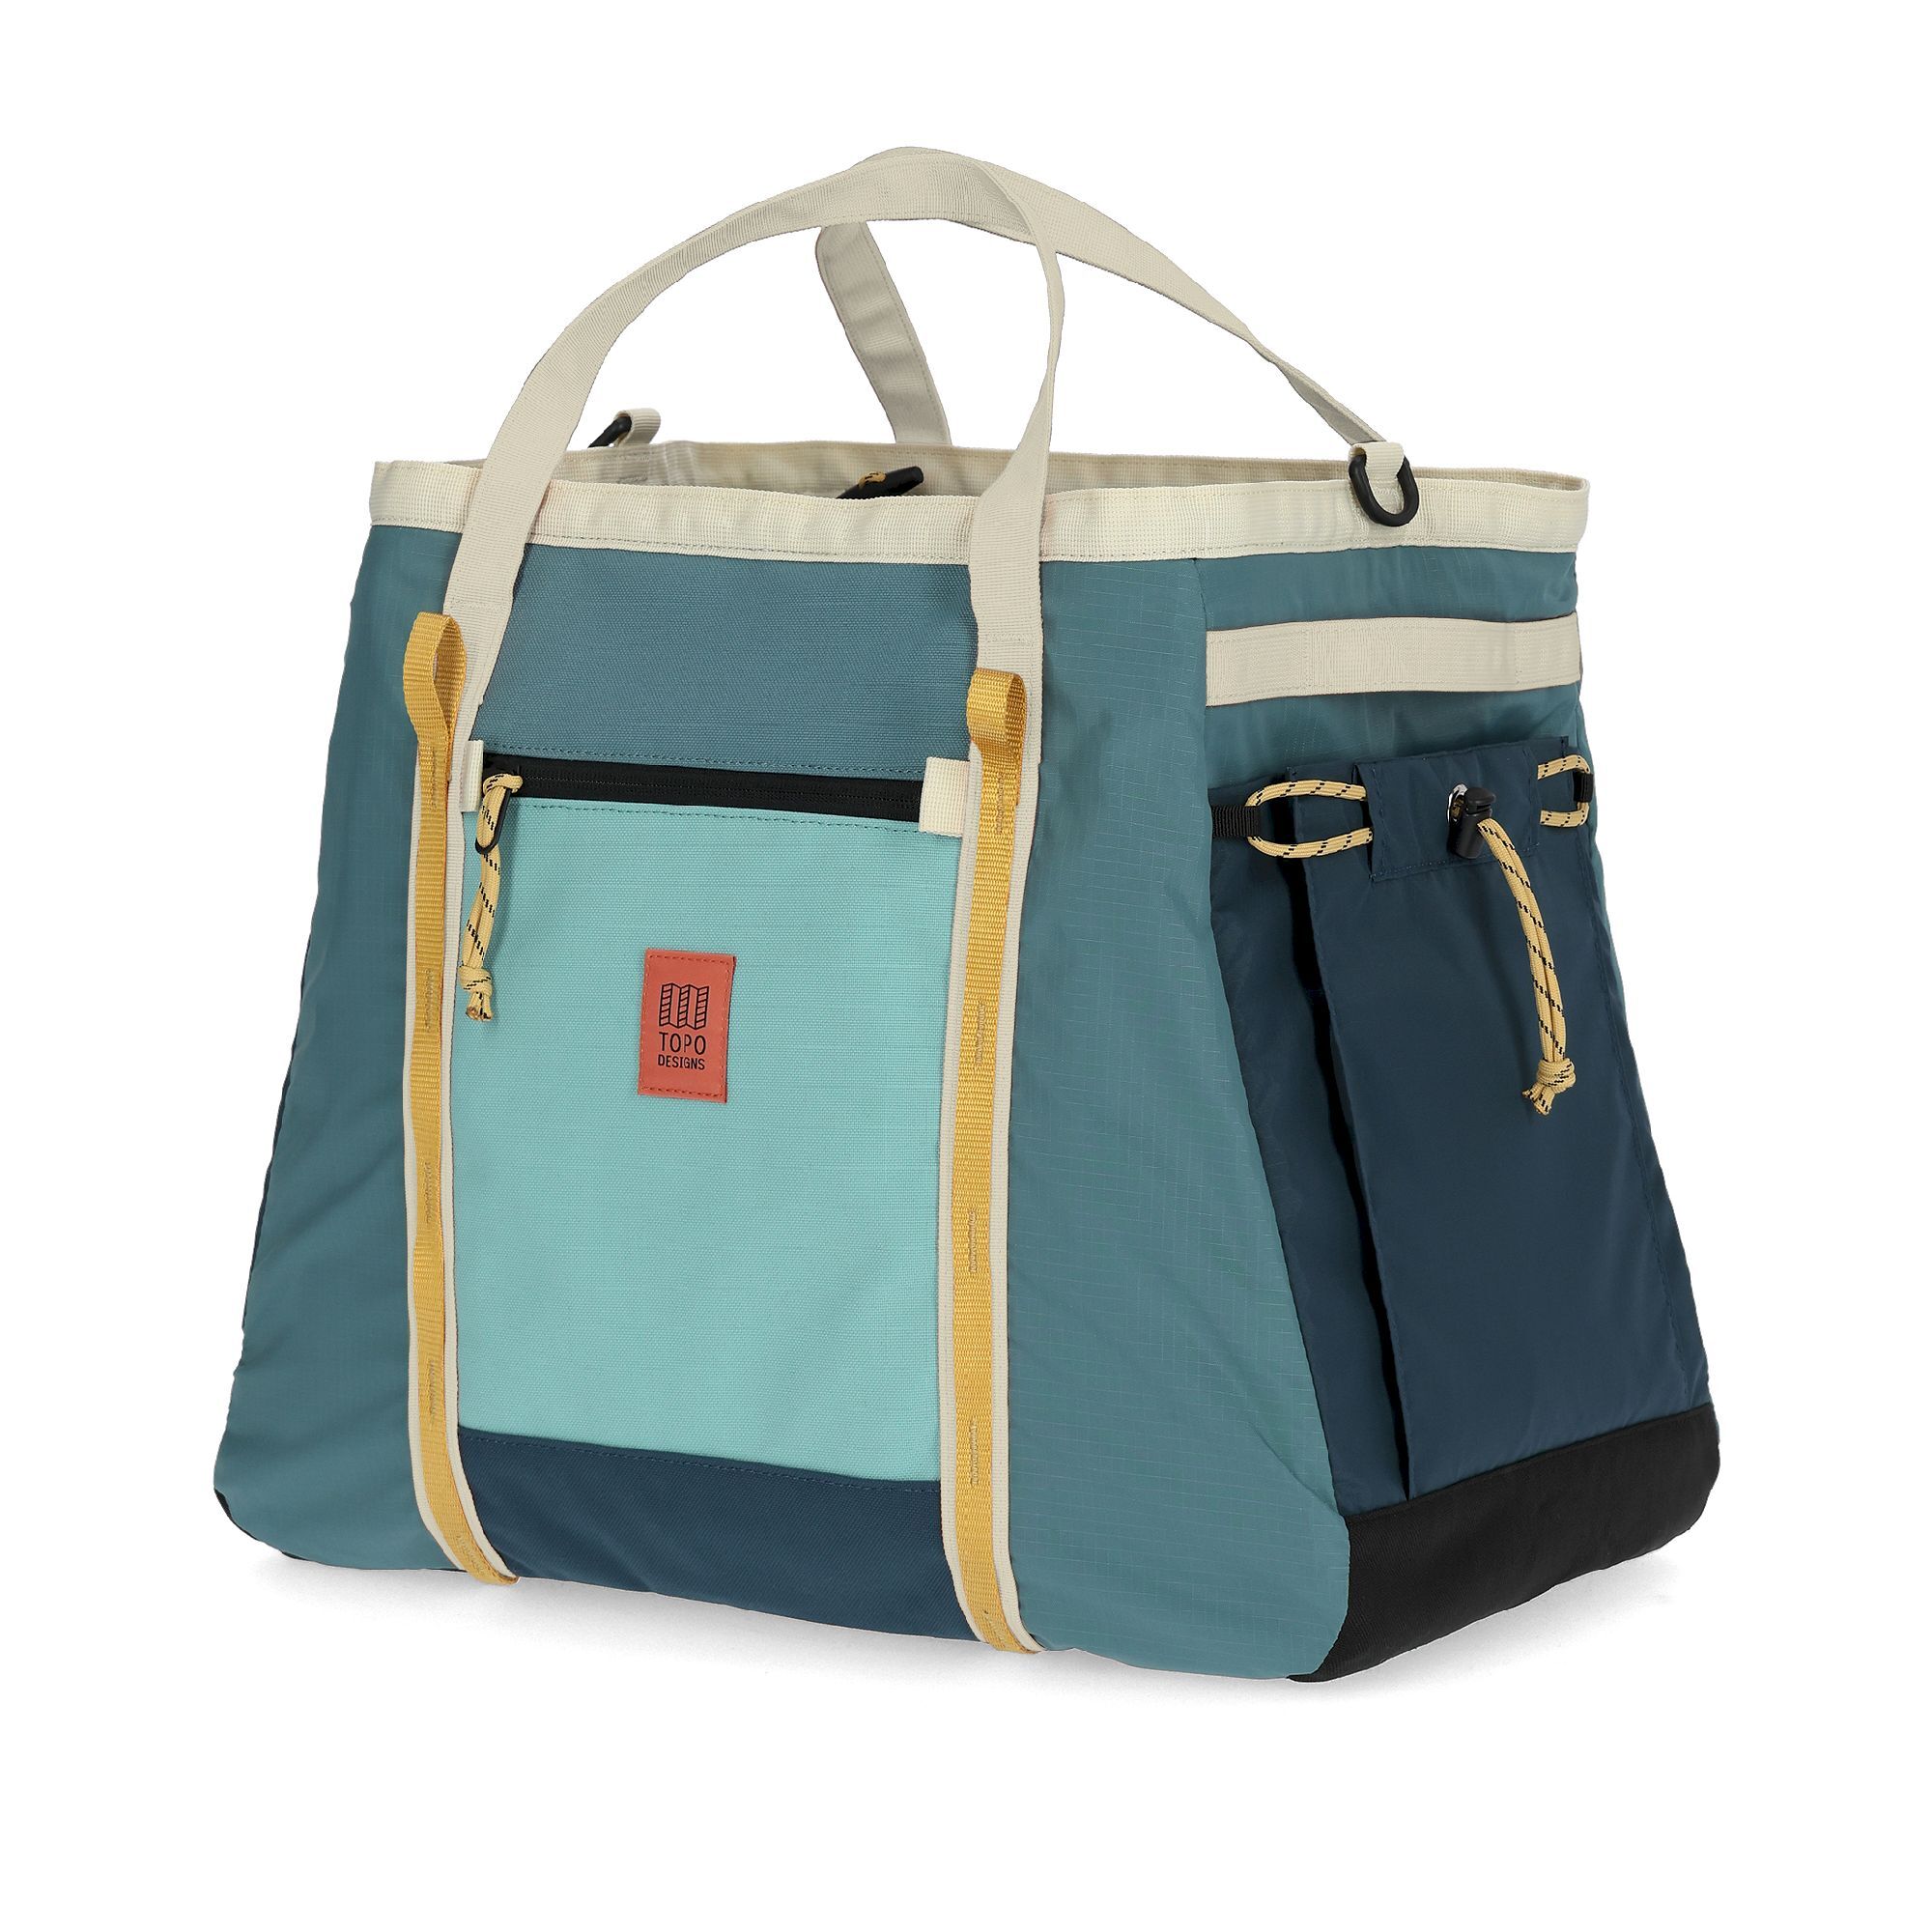 Topo Designs Mountain Gear Bag - Bolsa de viaje